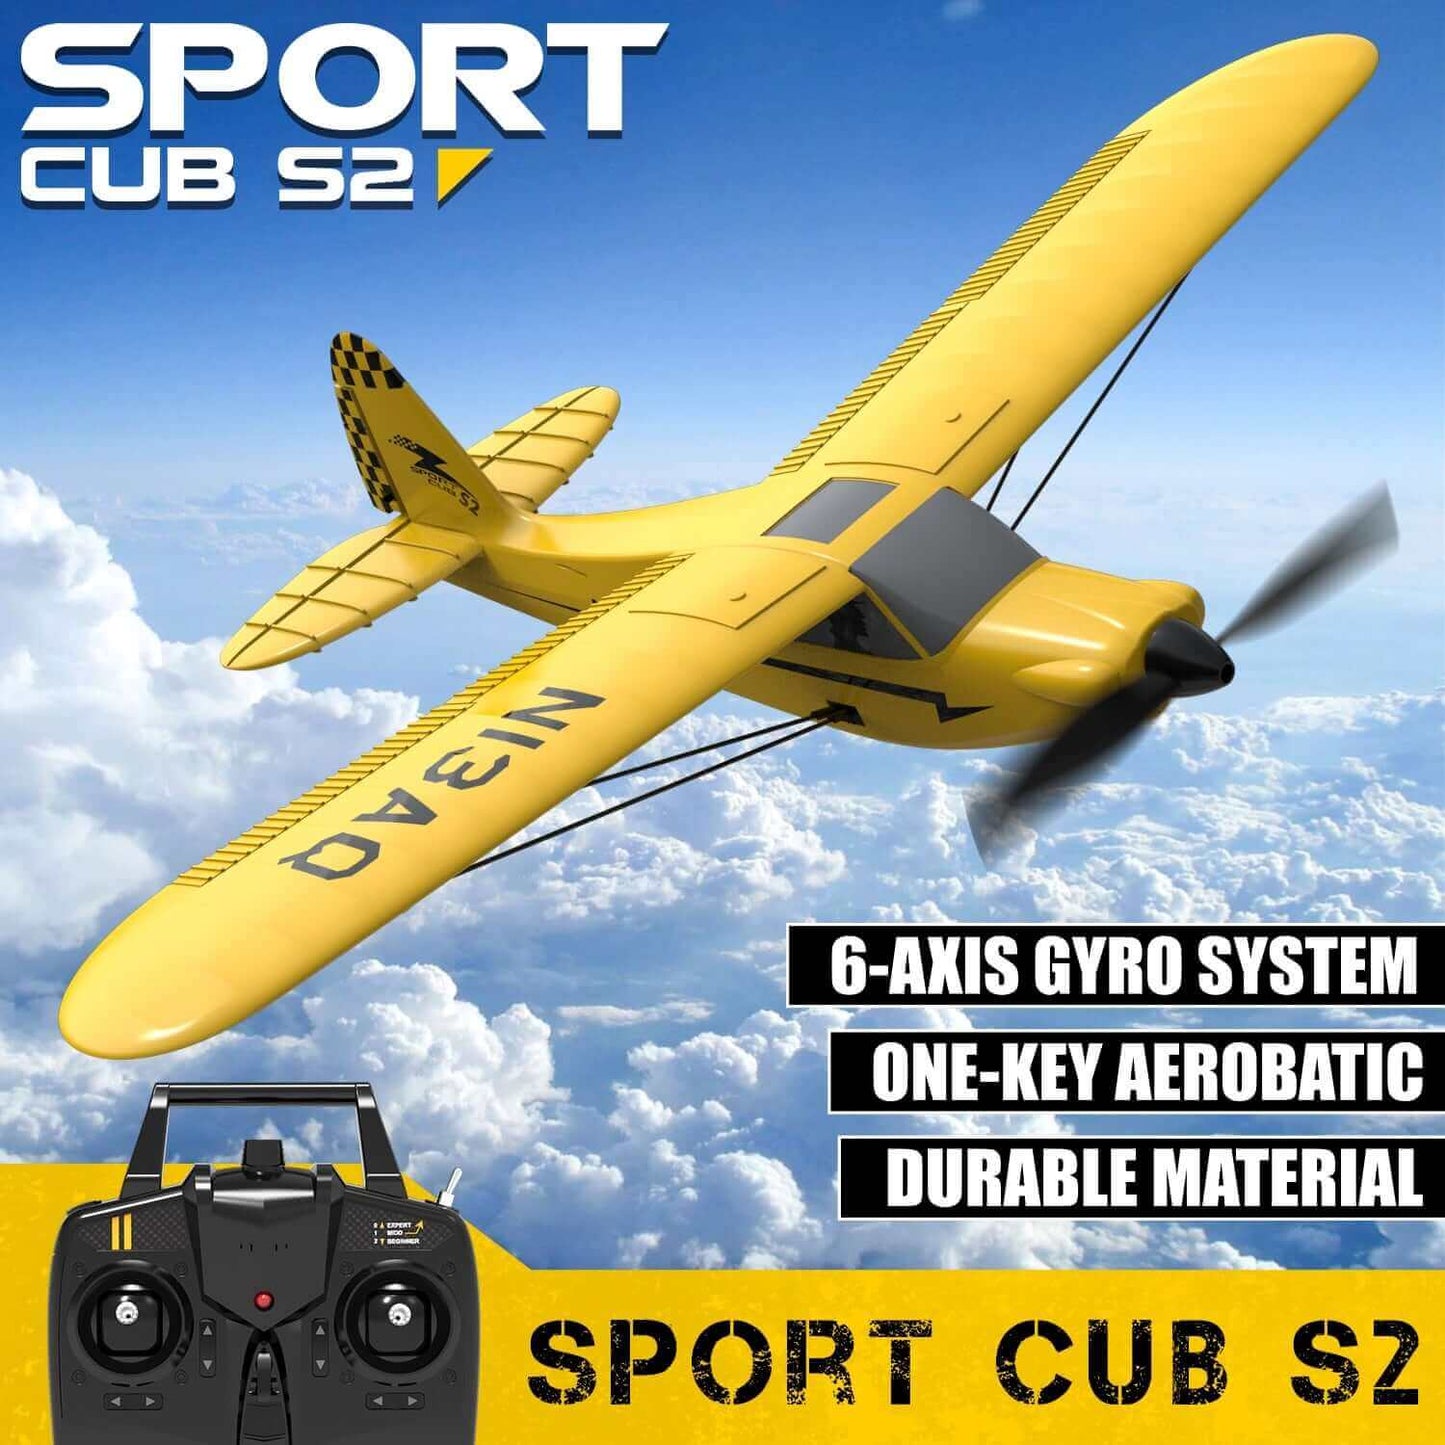 Sport Cub S2 RC Airplane with Gyro Stabilizer - 2.4G 3CH Remote Control Plane - RTF EPP Foam Aircrafts